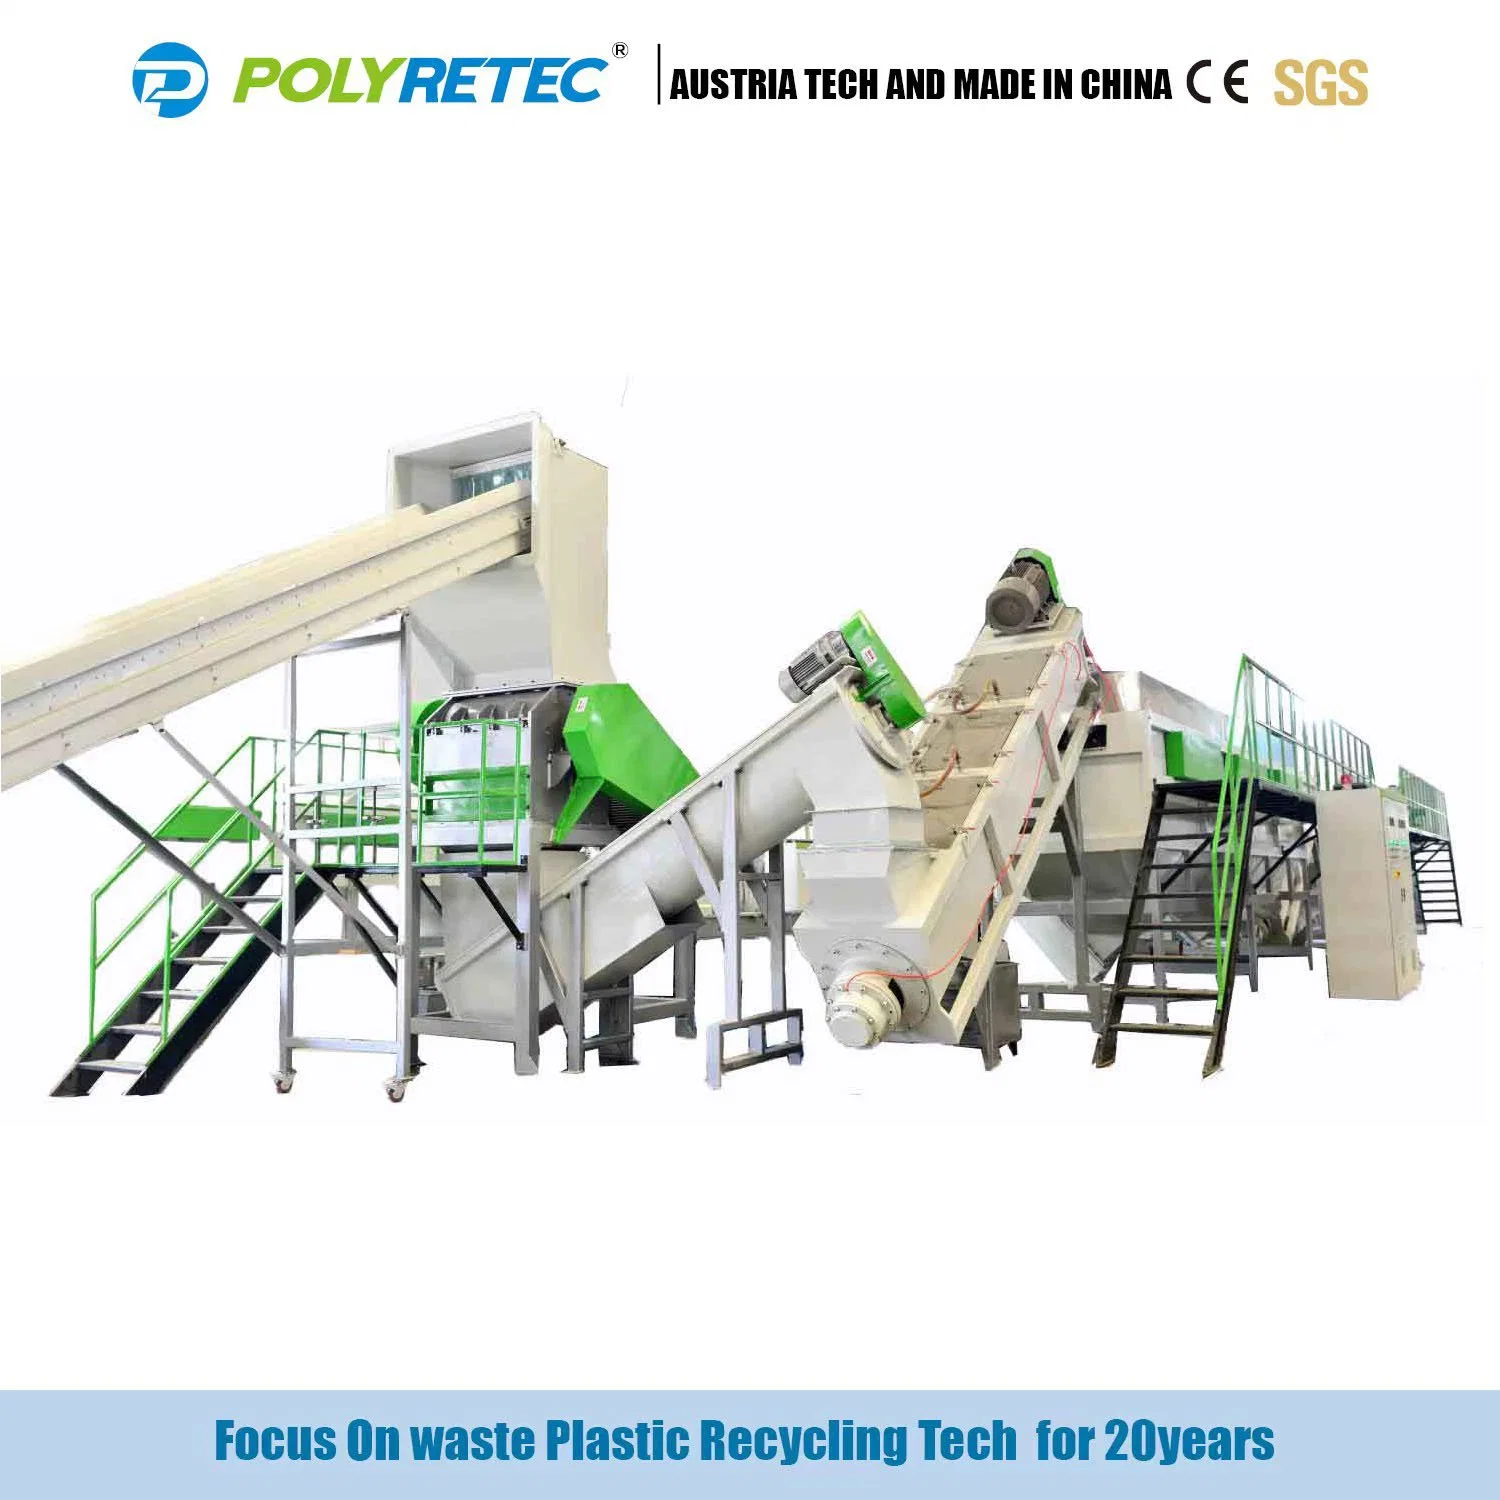 تصميم جديد مورد خط إعادة التدوير البلاستيكي لفيلم PE PP خط الغسل السحق البلاستيك إعادة تدوير الخردة سعر الماكينة